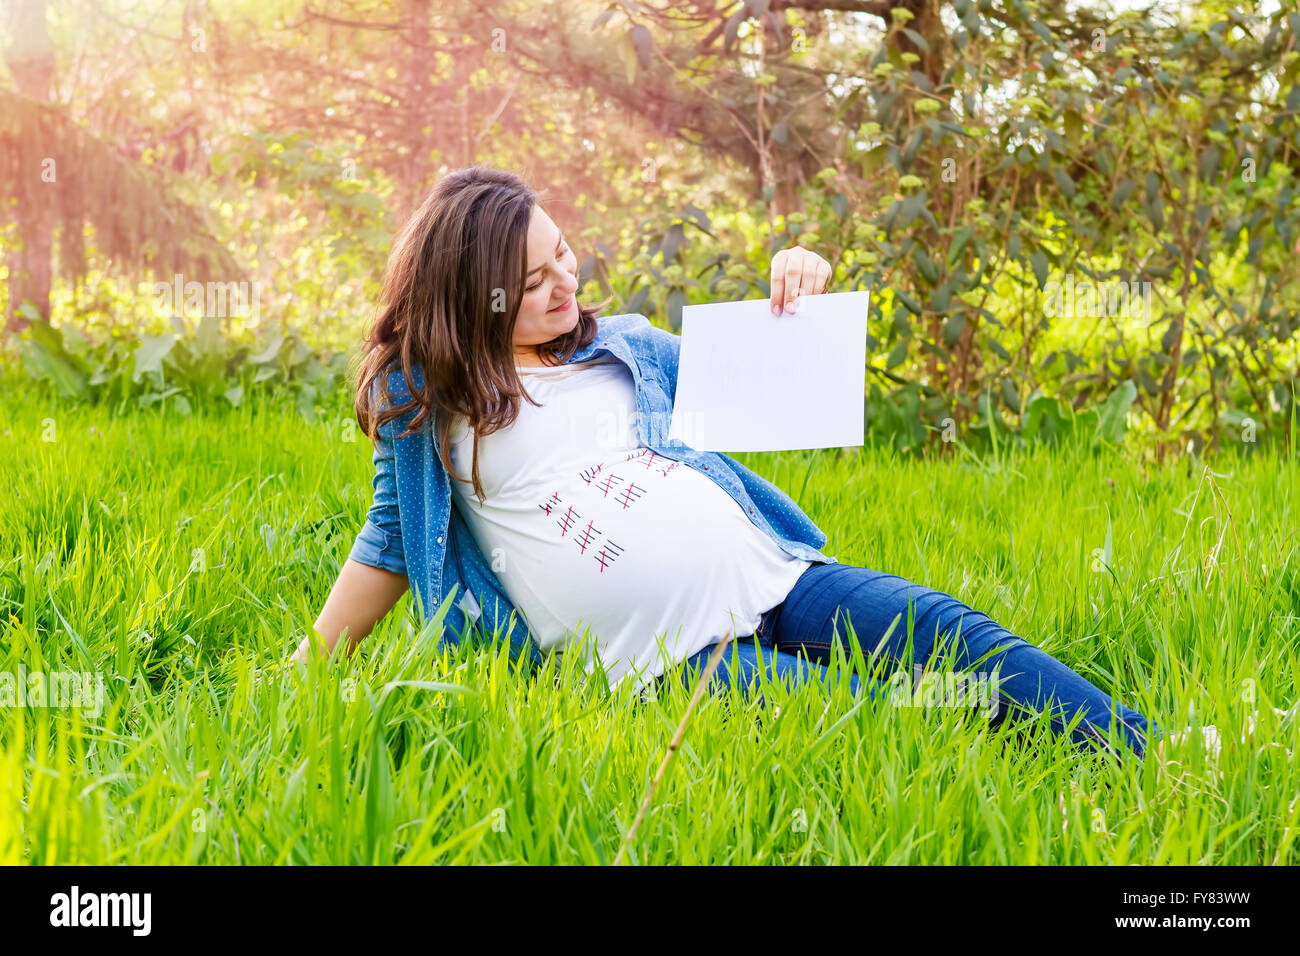 Belle femme enceinte avec un papier de plein air dans la main montrant le jour de la naissance de son bébé. Banque D'Images